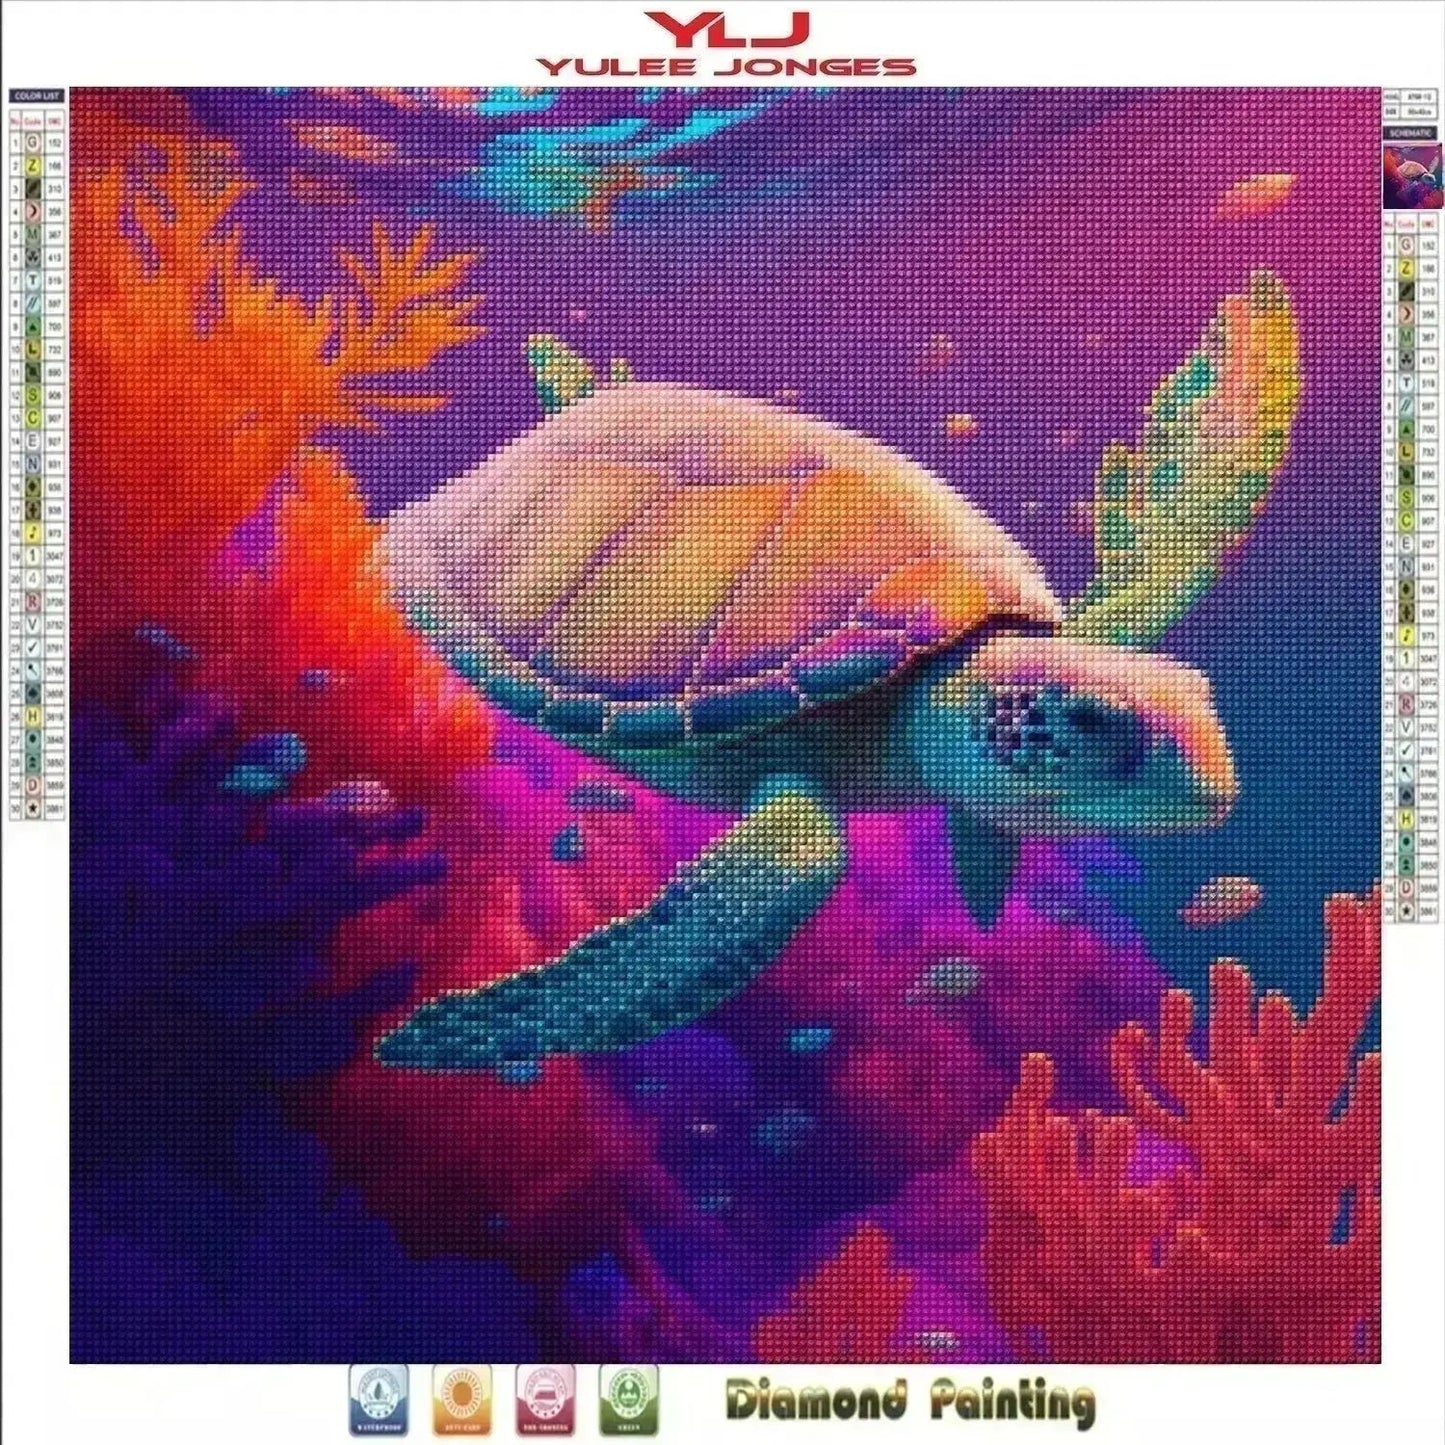 Gliding Sea Turtle - Turtle Diamond Painting Kit - YLJ Art Shop - YLJ Art Shop